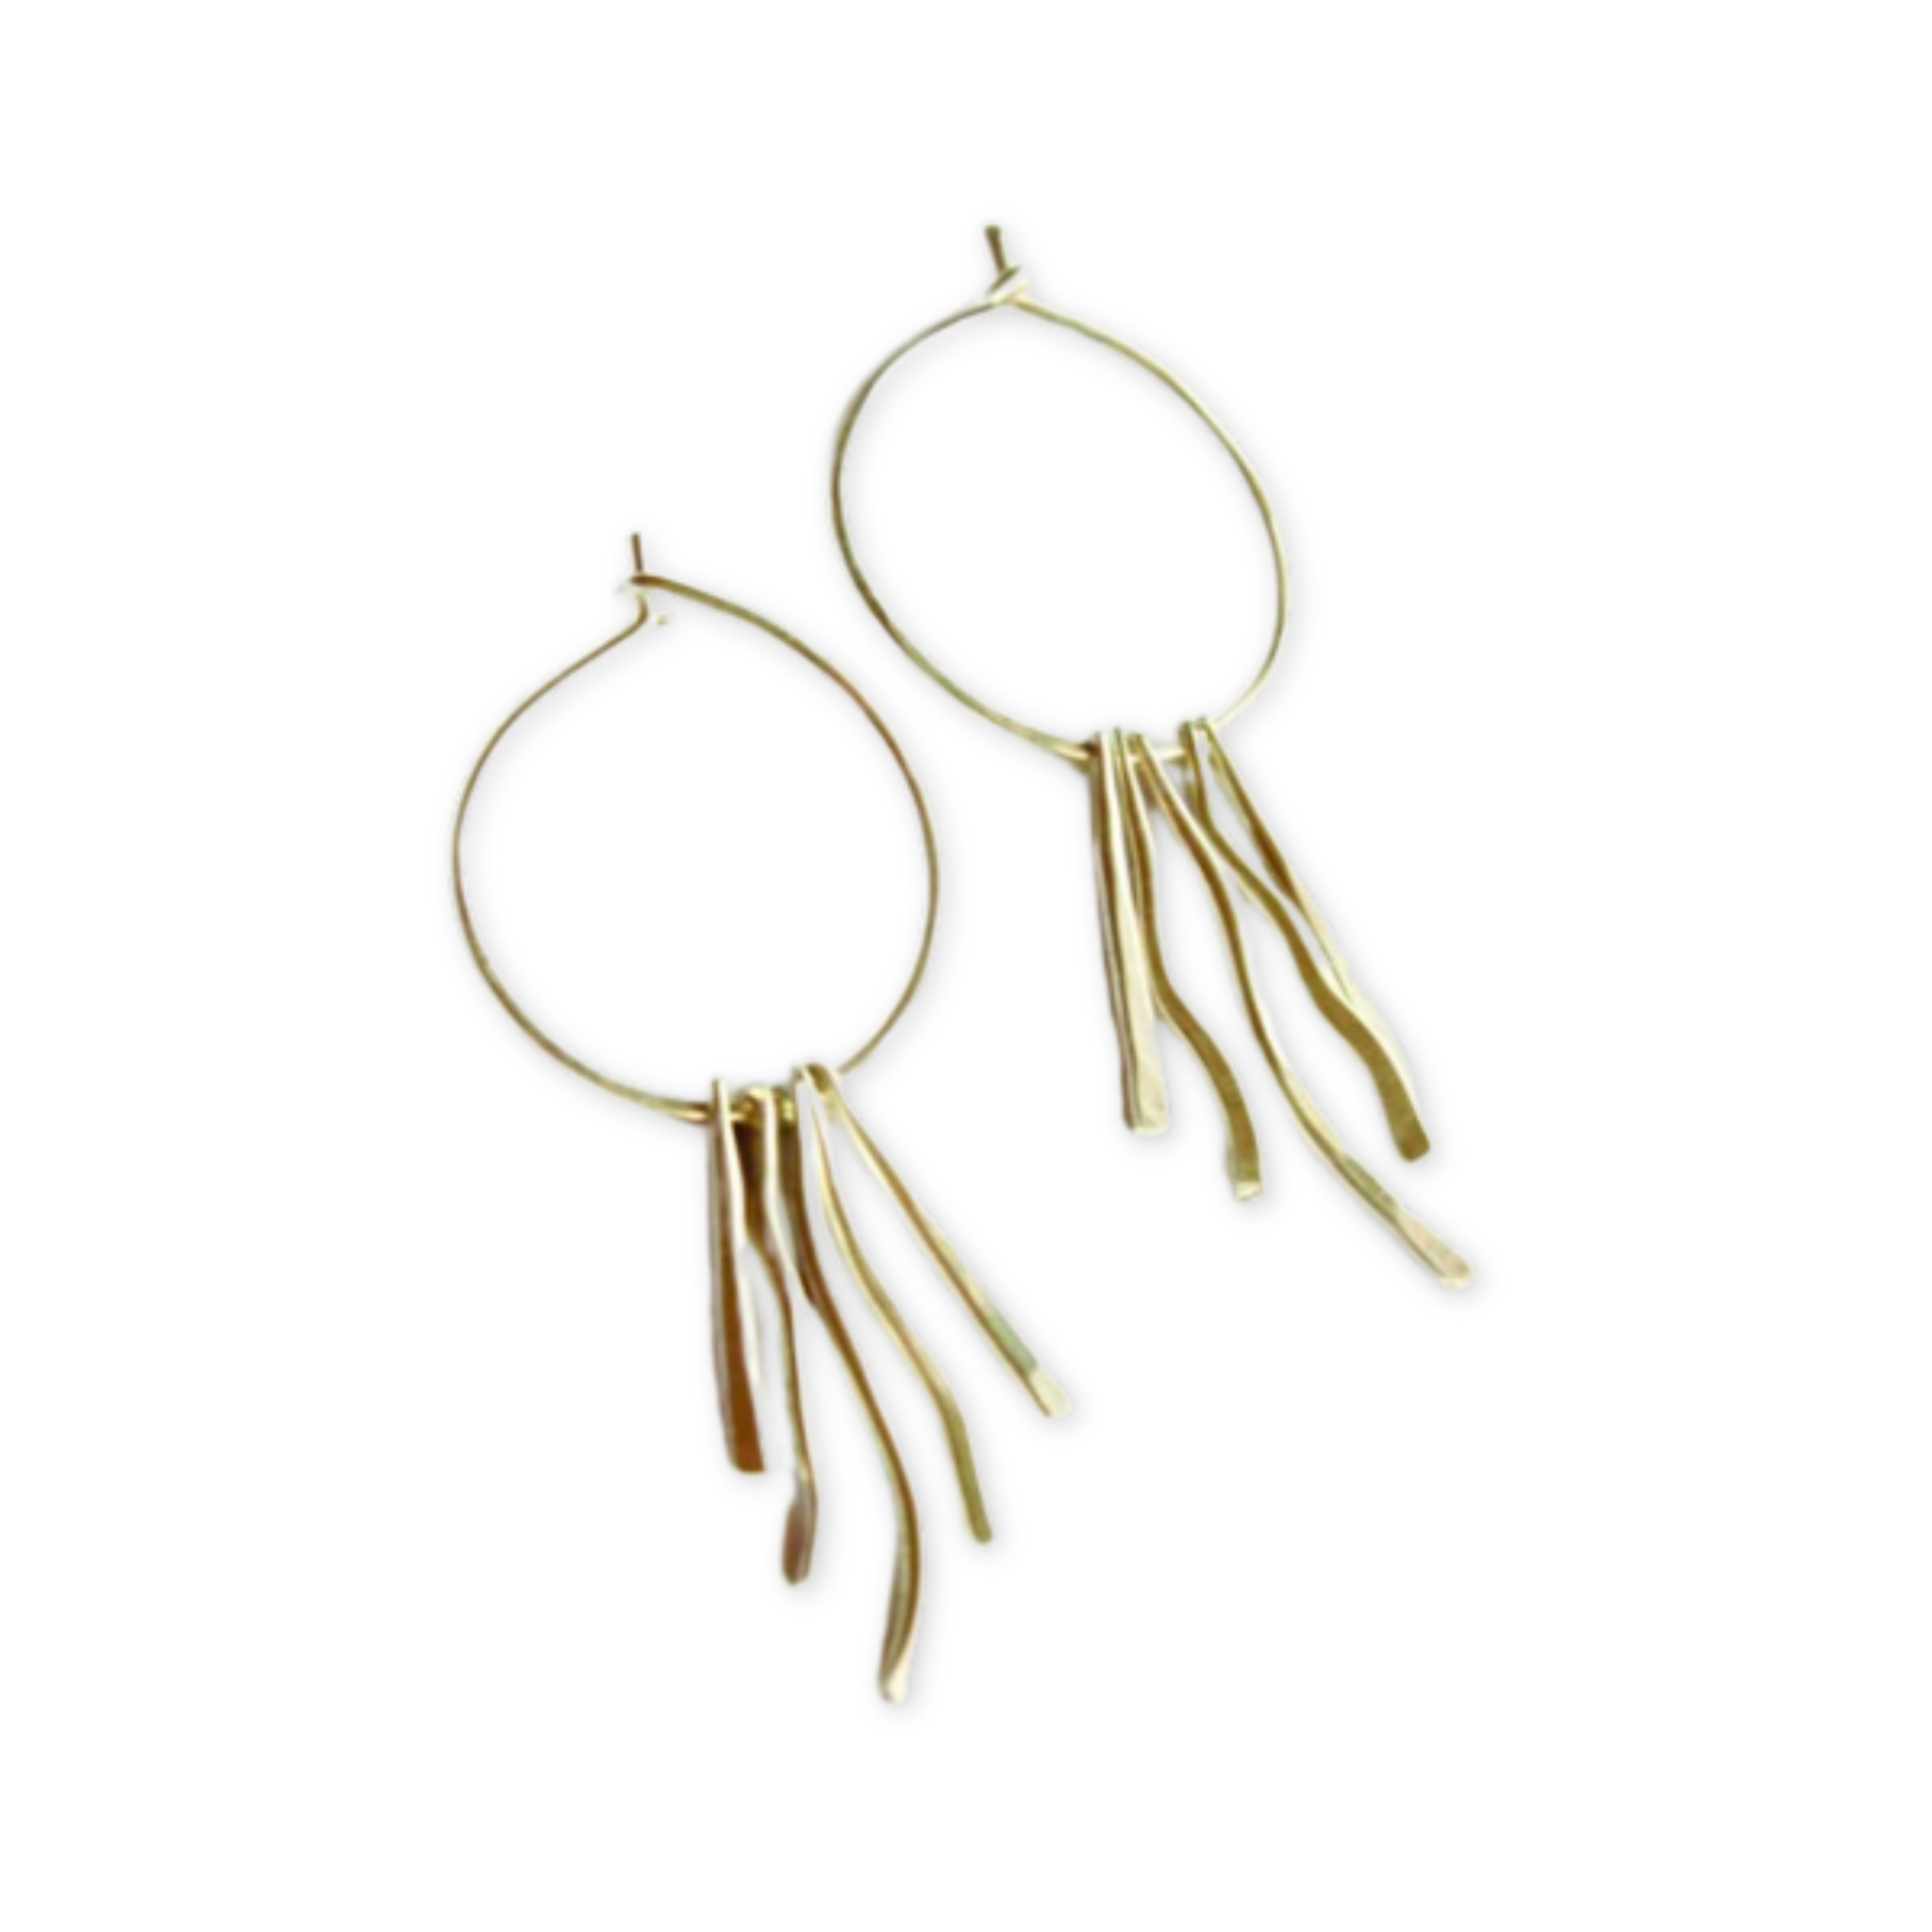 hoop earrings with hanging metal wavy fringe